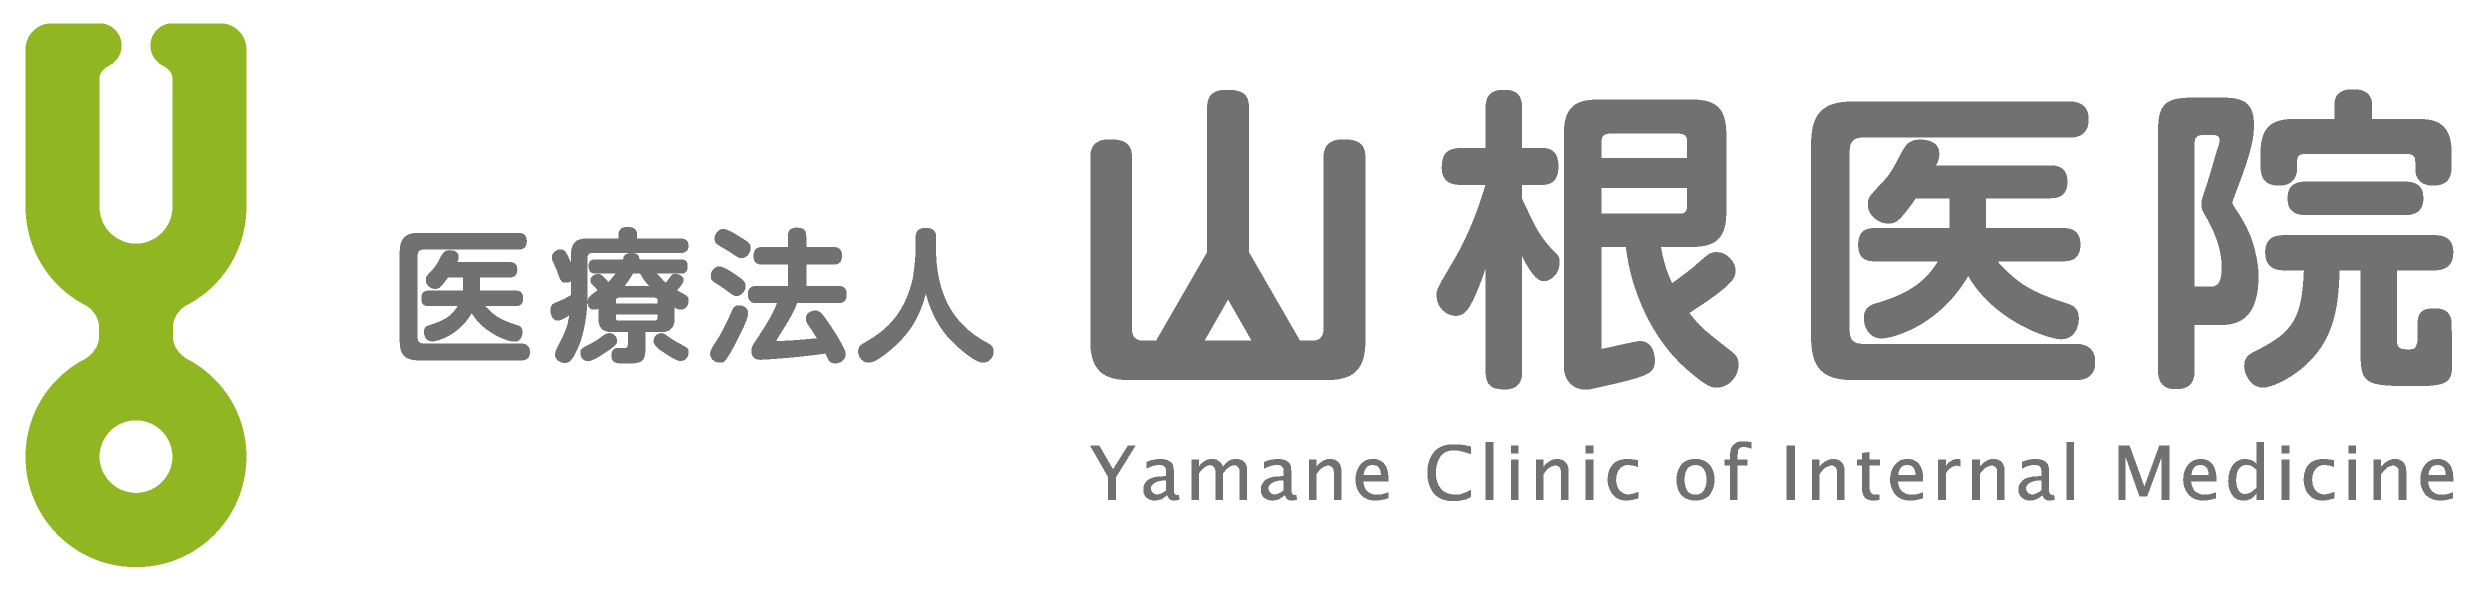 yamane_clinic_Internal_medicine_logo